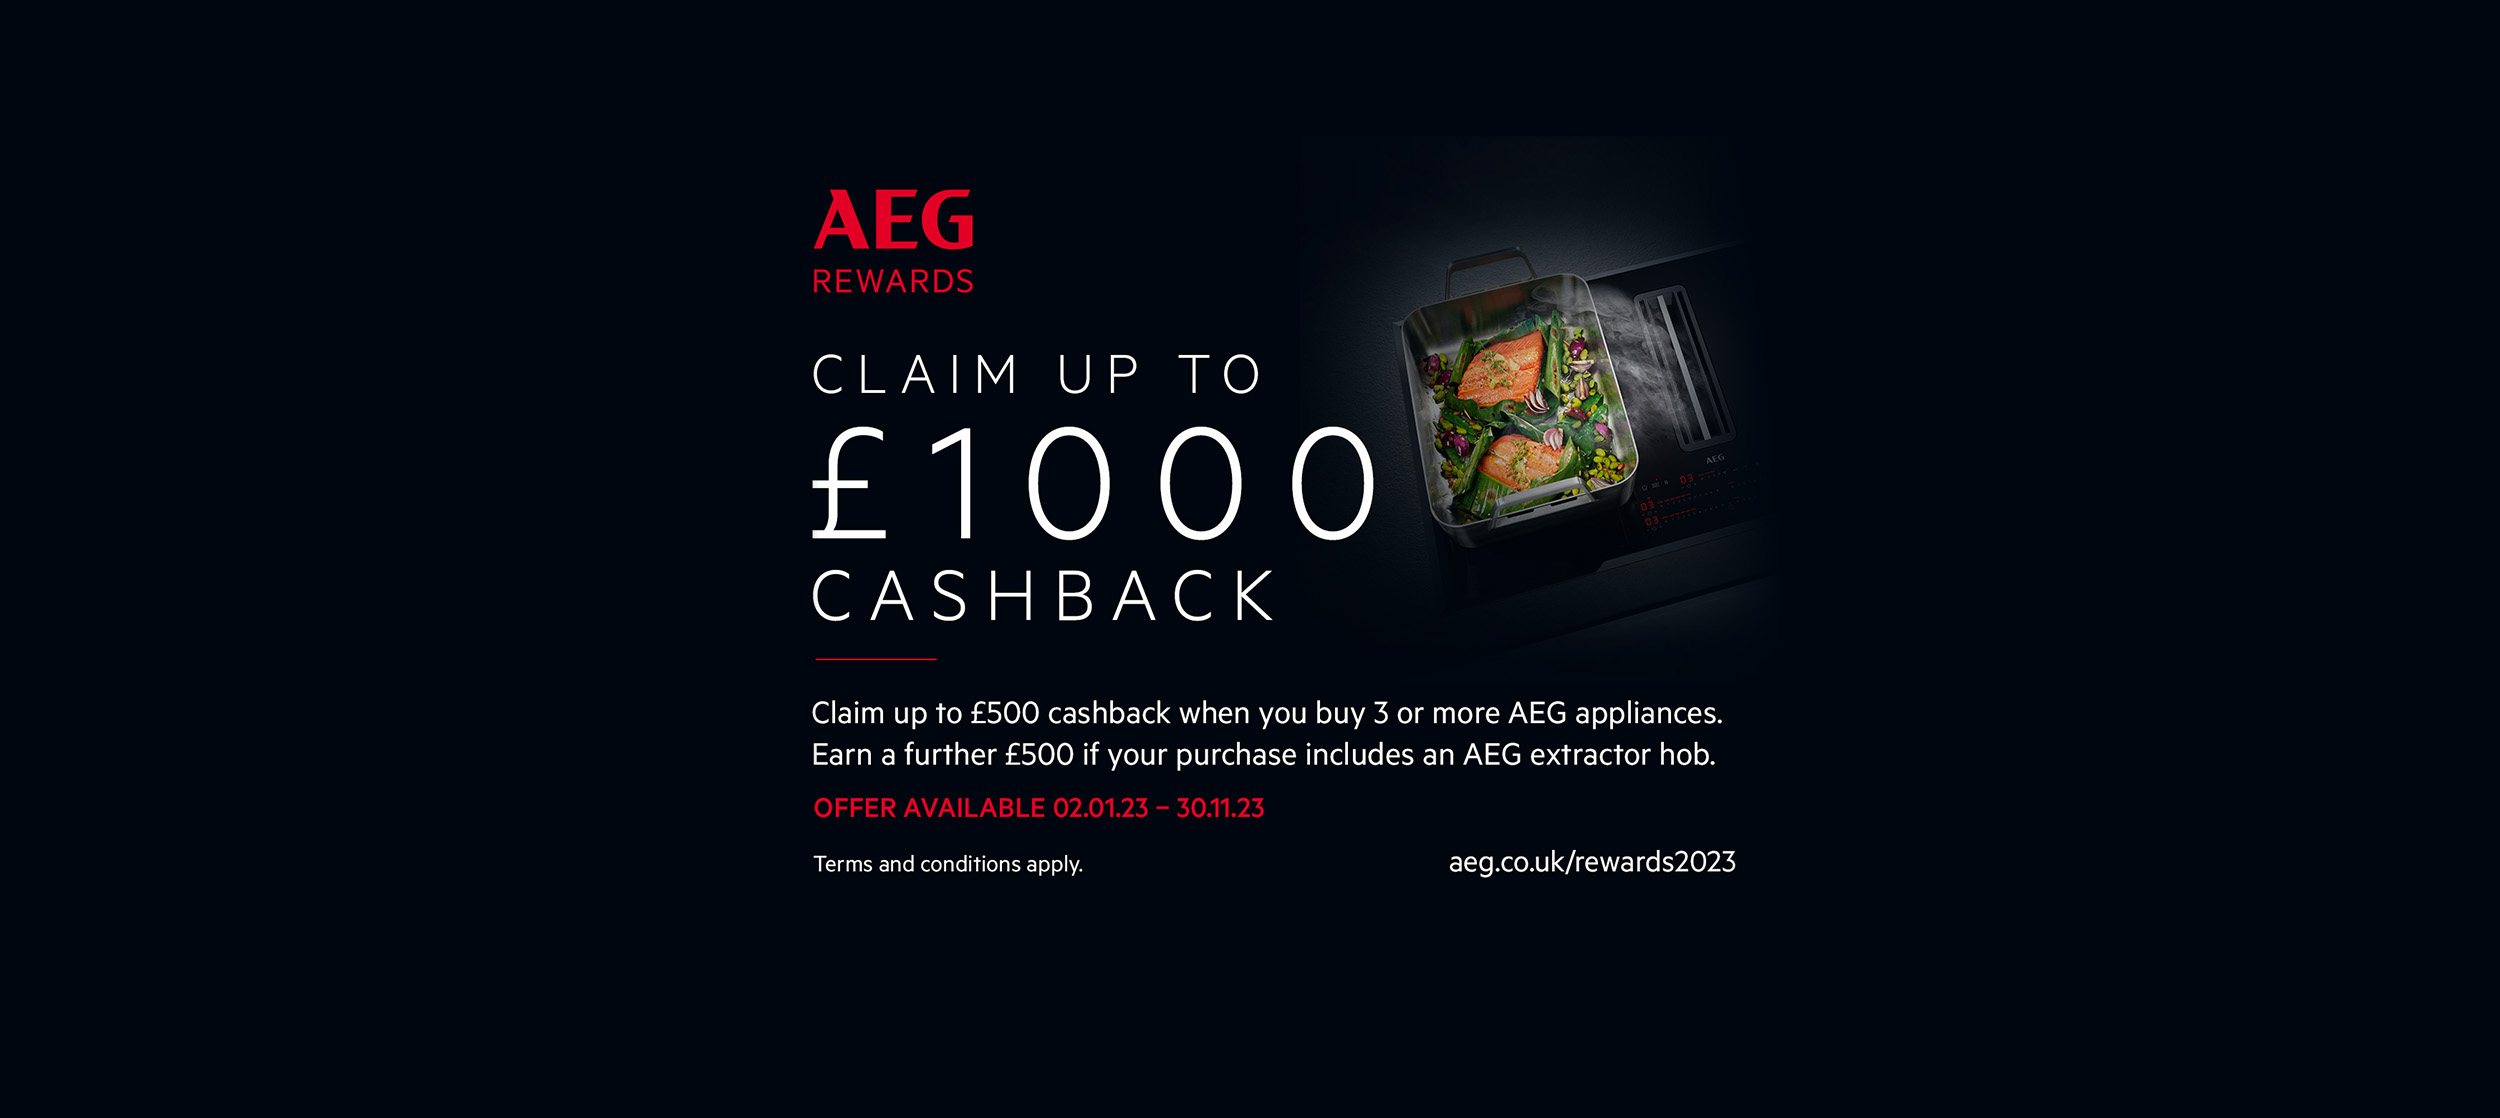 AEG £1000 Cashback 2023